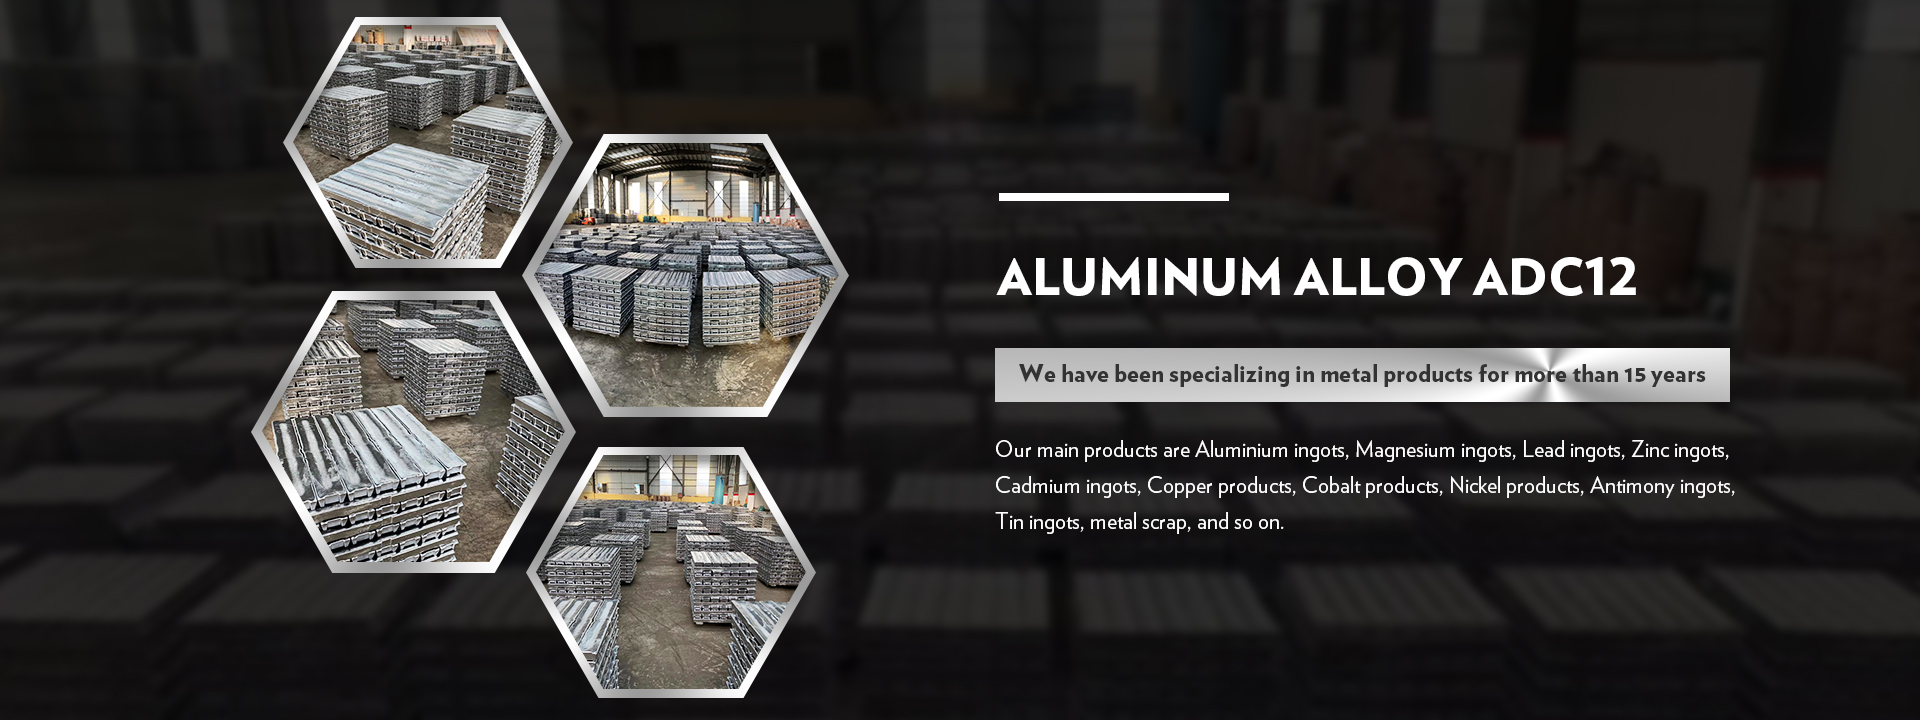 Aluminum Alloy ADC12